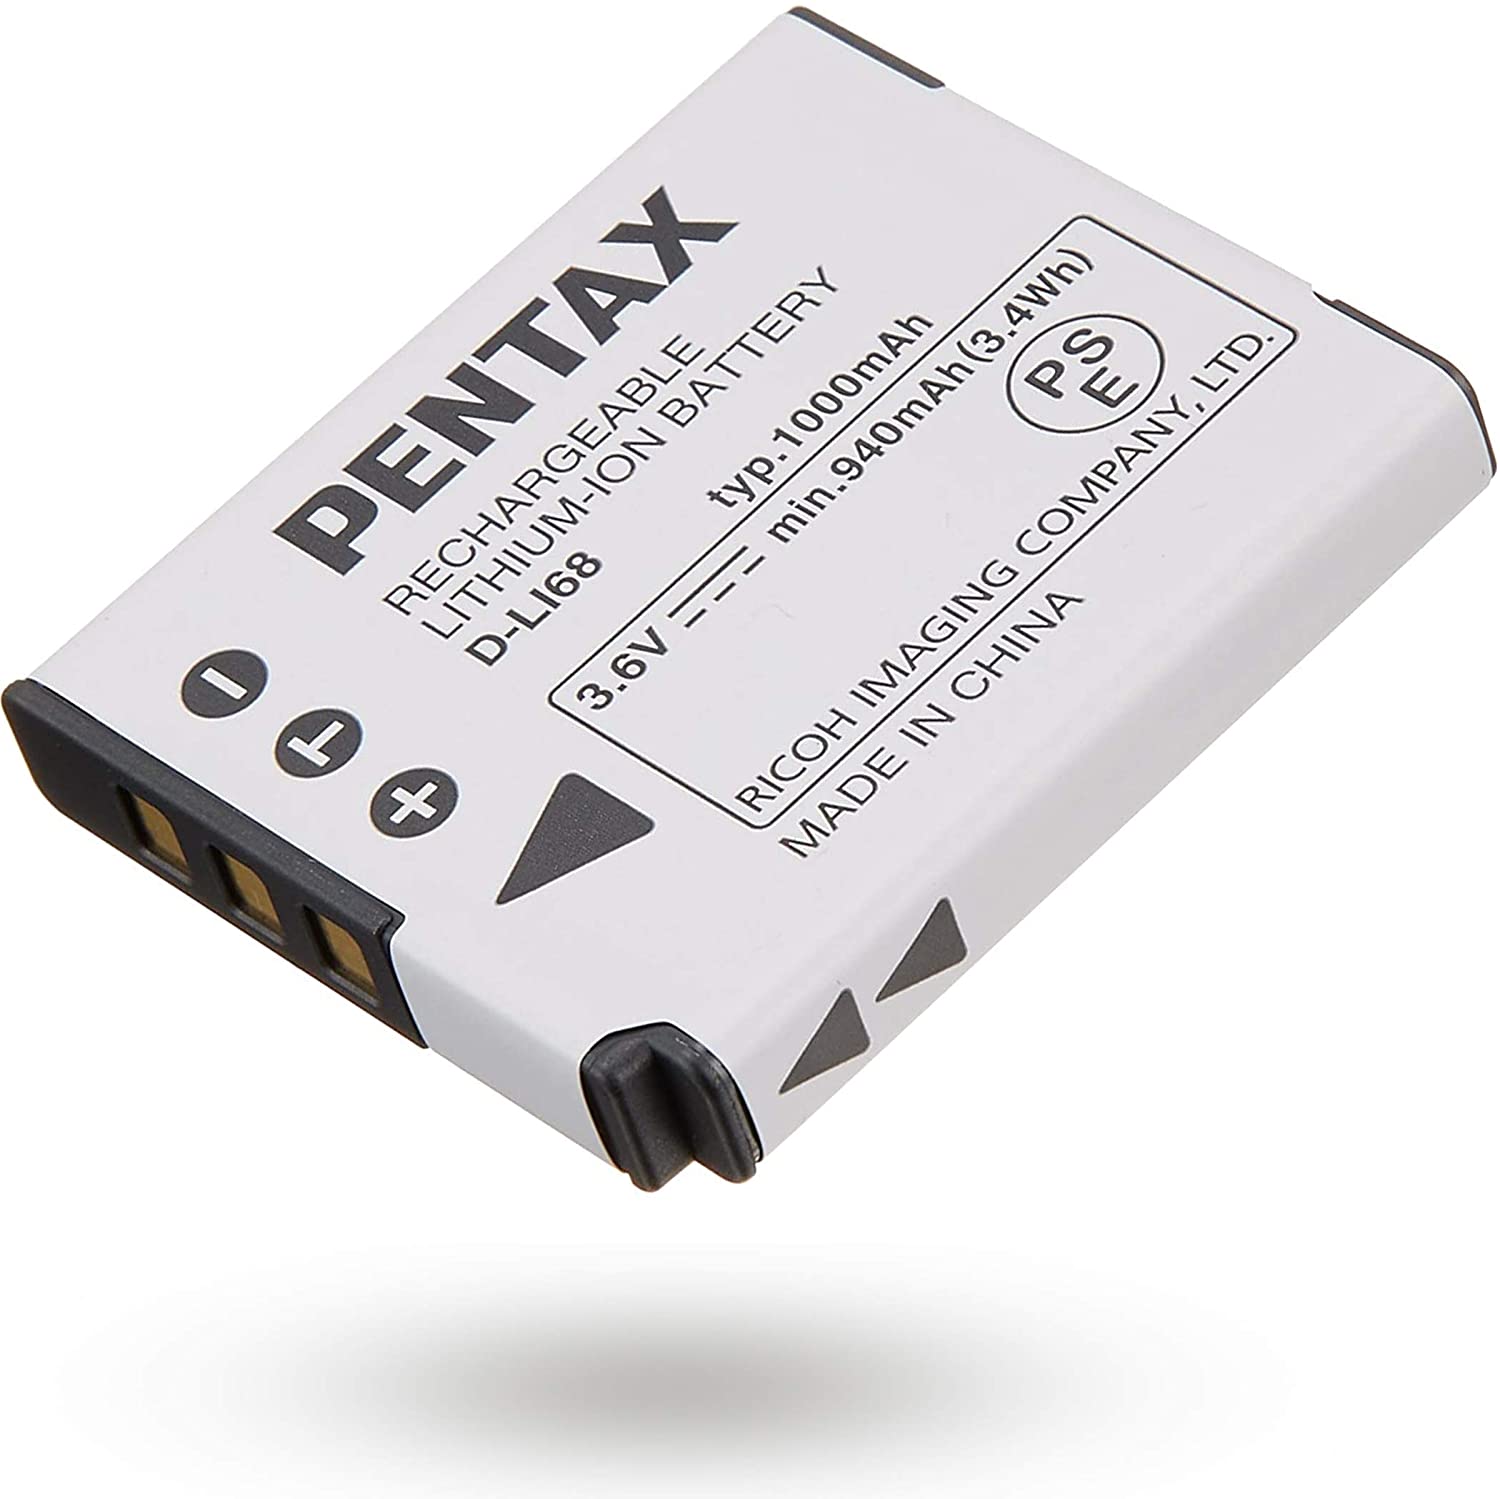 【限定製作】 お買得 PENTAX D-LI68 充電式リチウムイオンバッテリー リチャージャブルバッテリー リコー メーカー純正品 対応機種 Q-S1 Q7 Q10 Q Optio S10用 elma-ultrasonic.nl elma-ultrasonic.nl